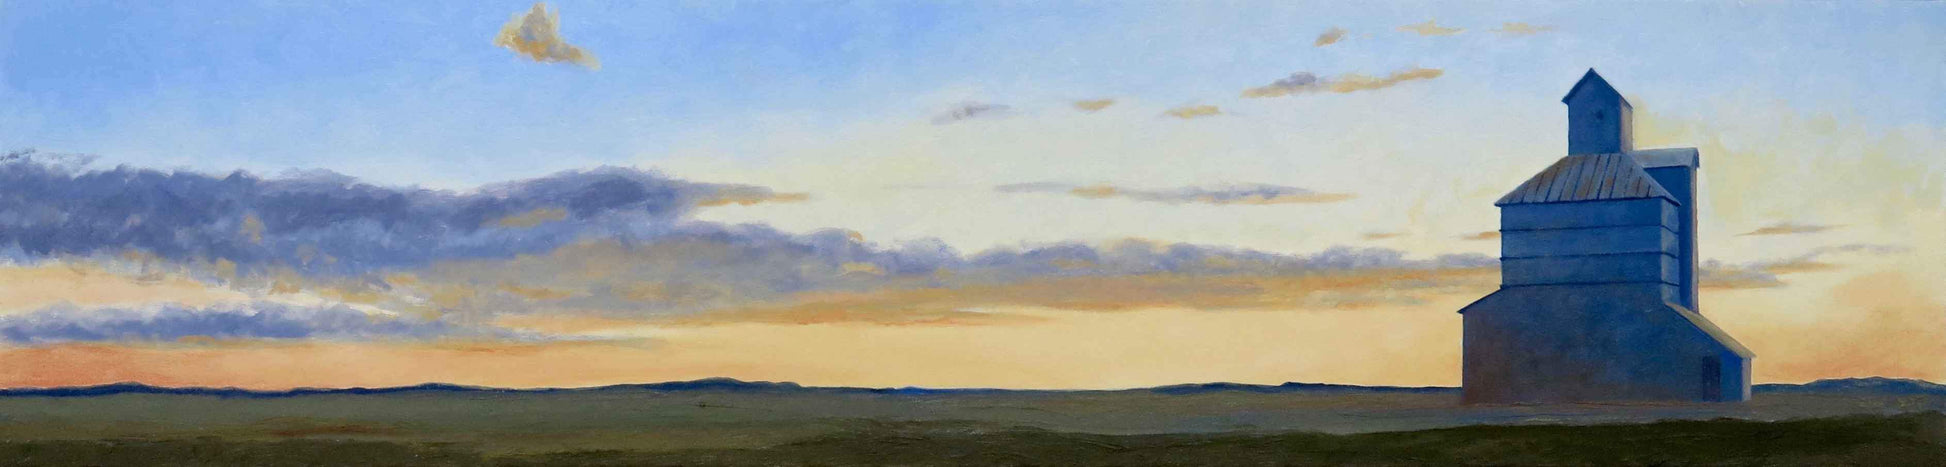 David Knowlton-Trenton, Kansas-Sorrel Sky Gallery-Painting